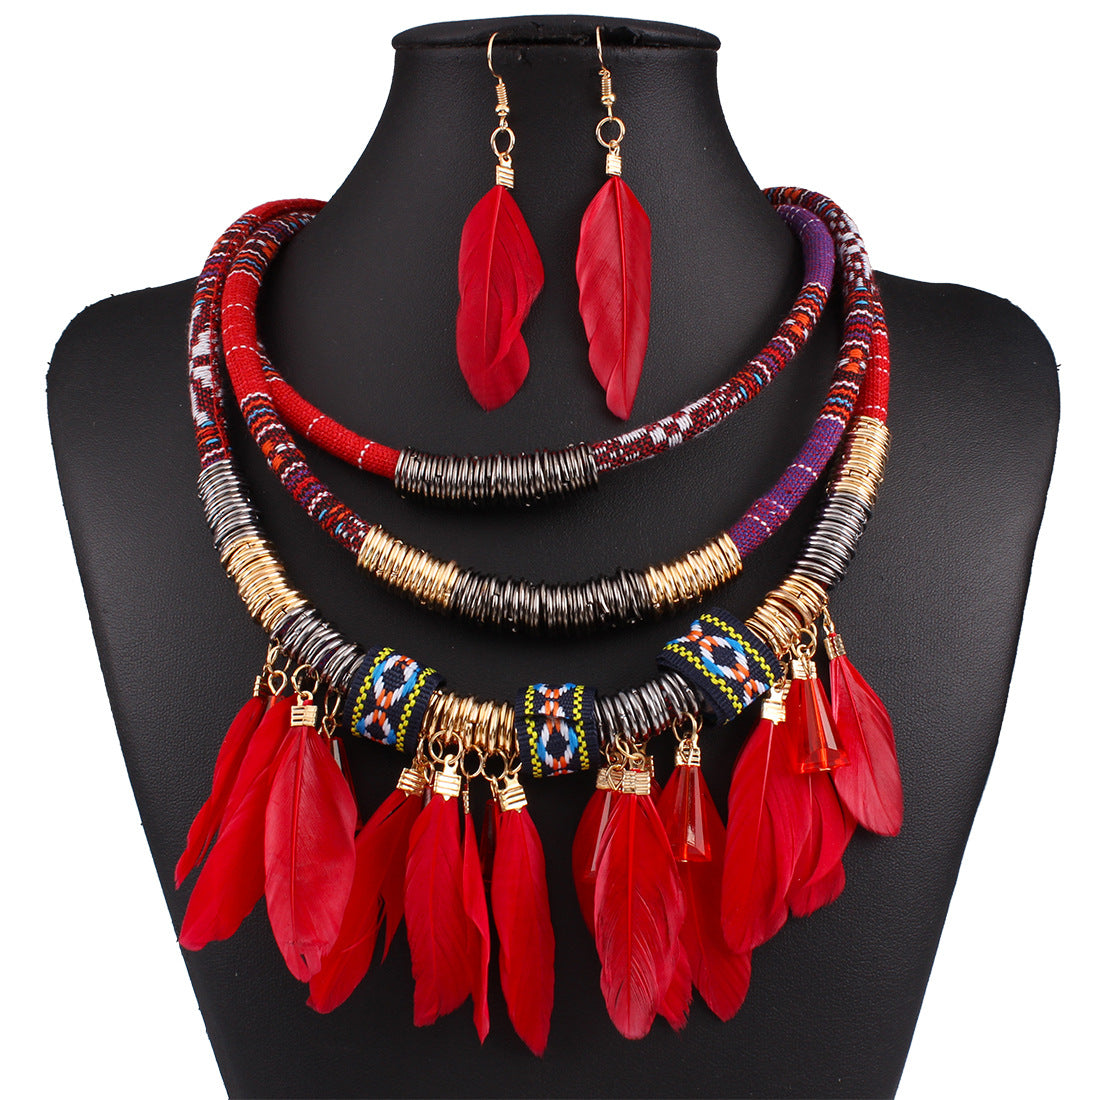 Feather tassel necklace earrings set